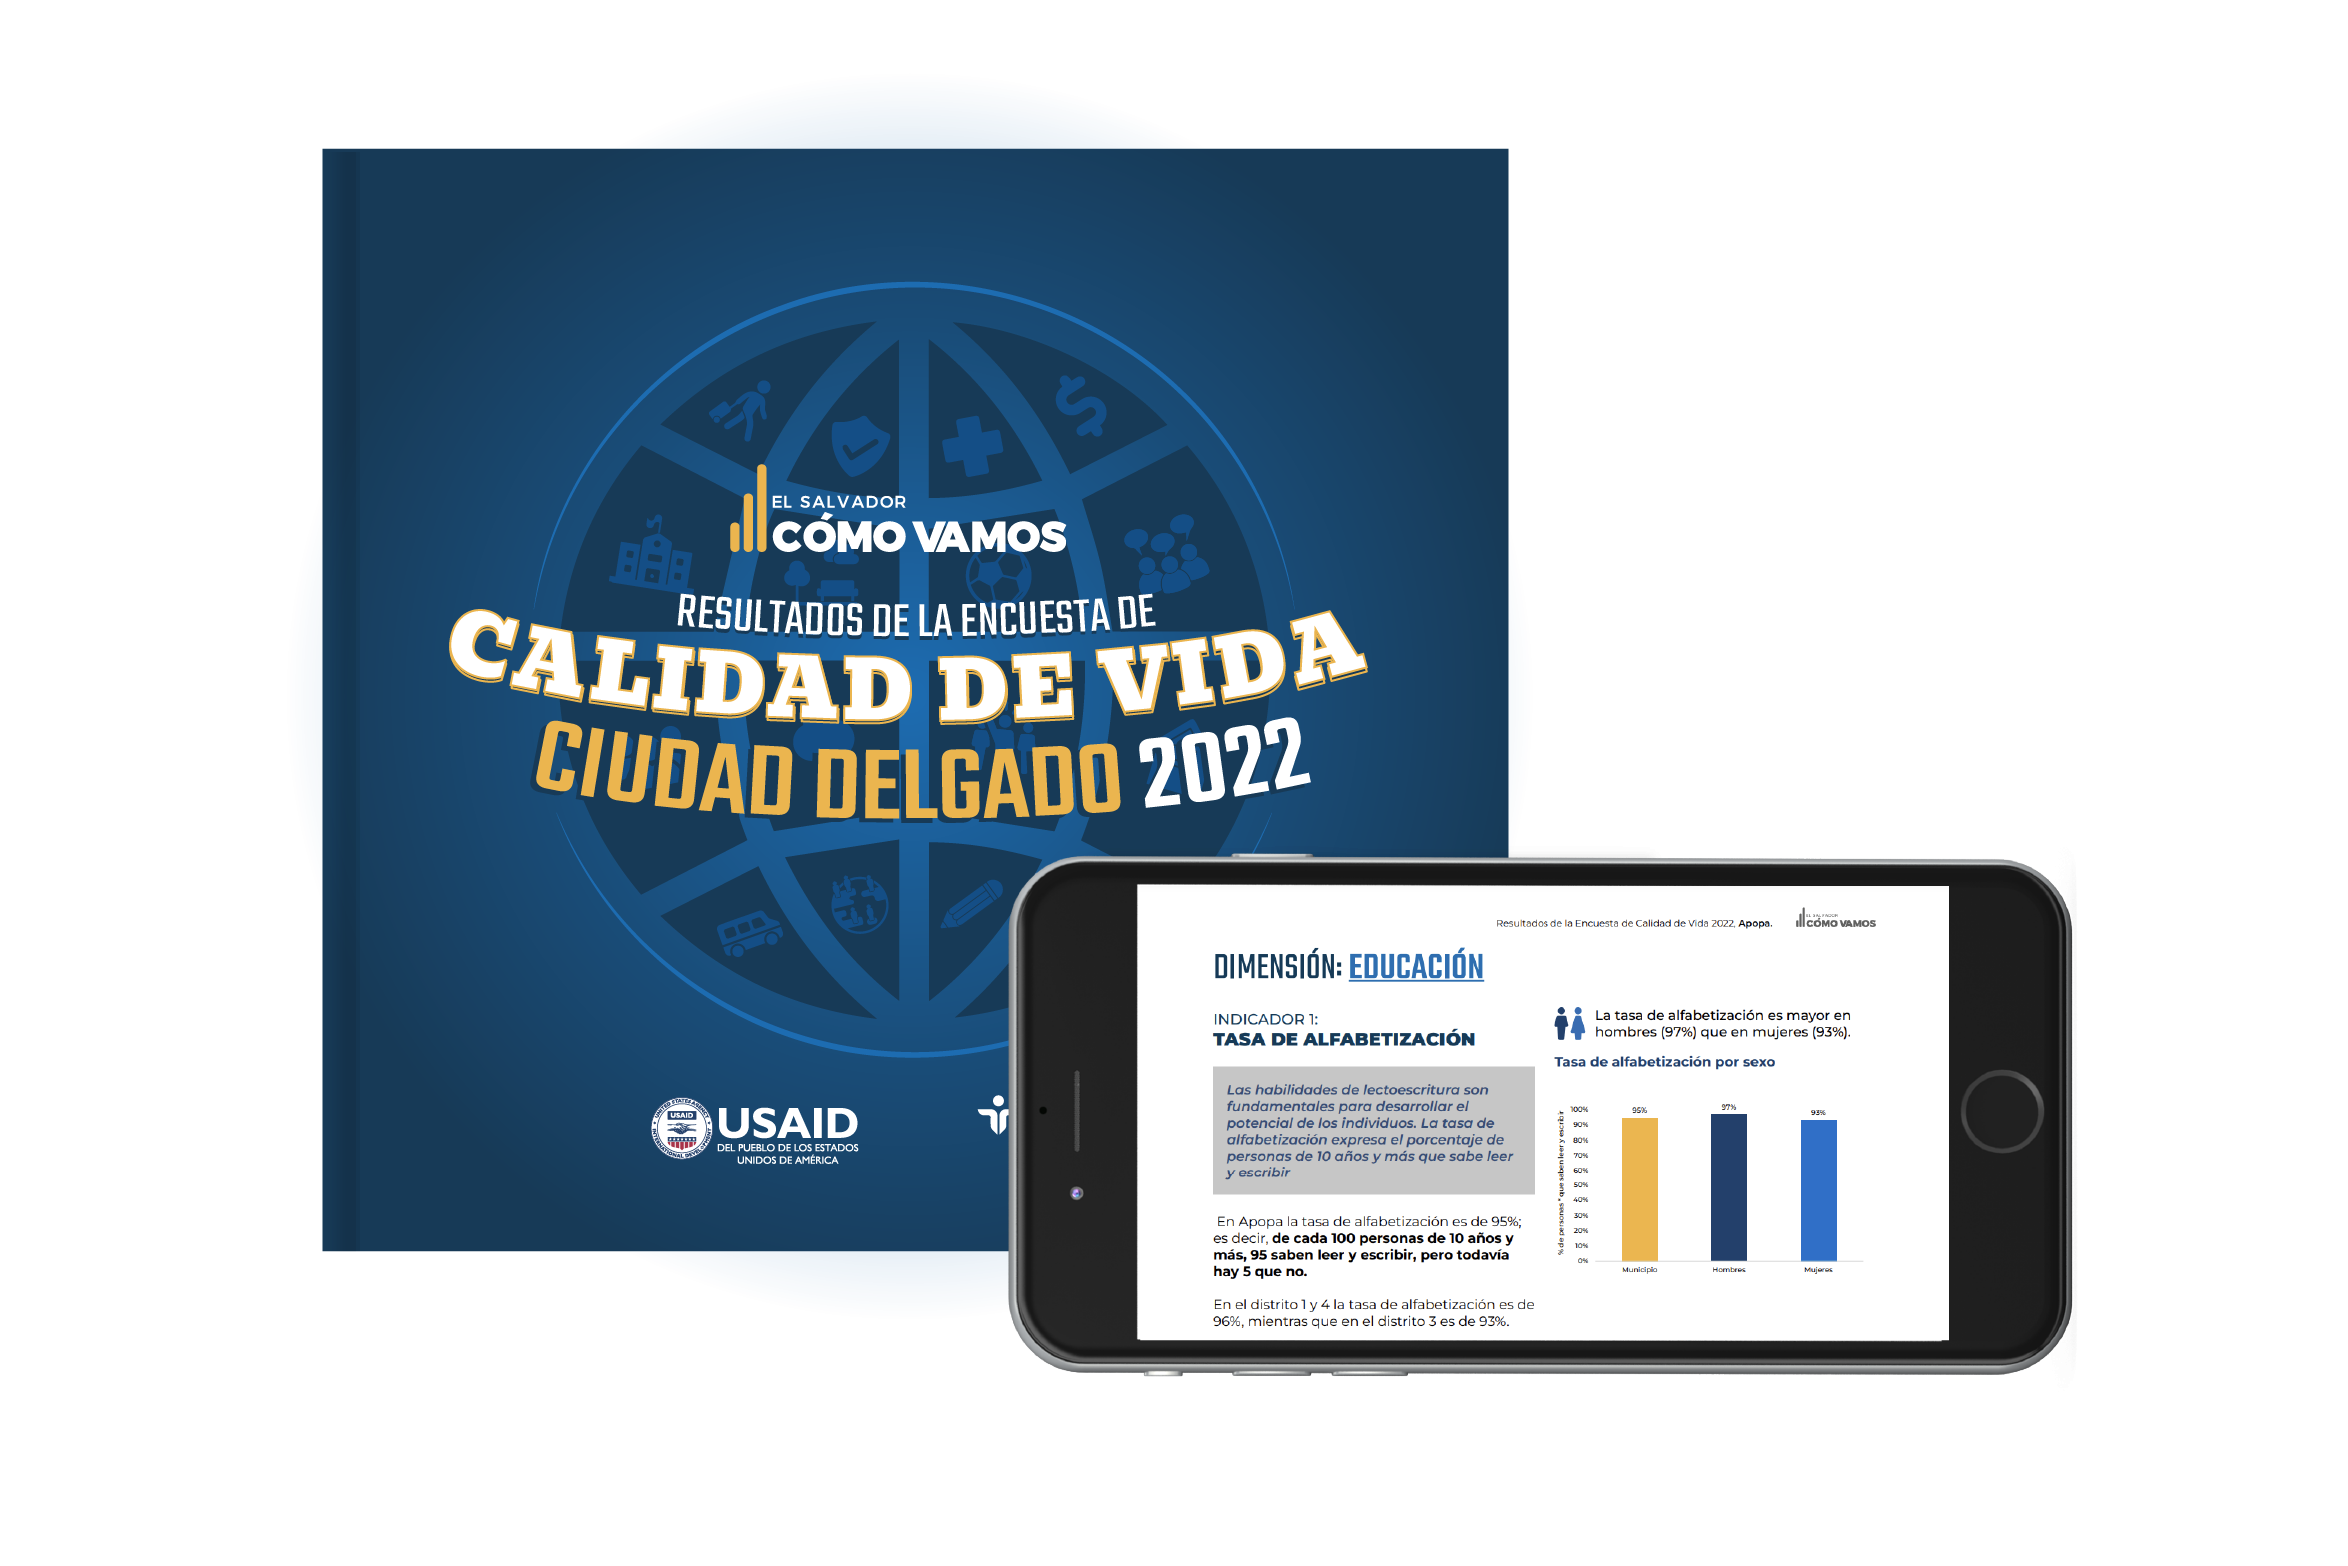 Ciudad Delgado I Encuesta de Calidad de Vida 2022